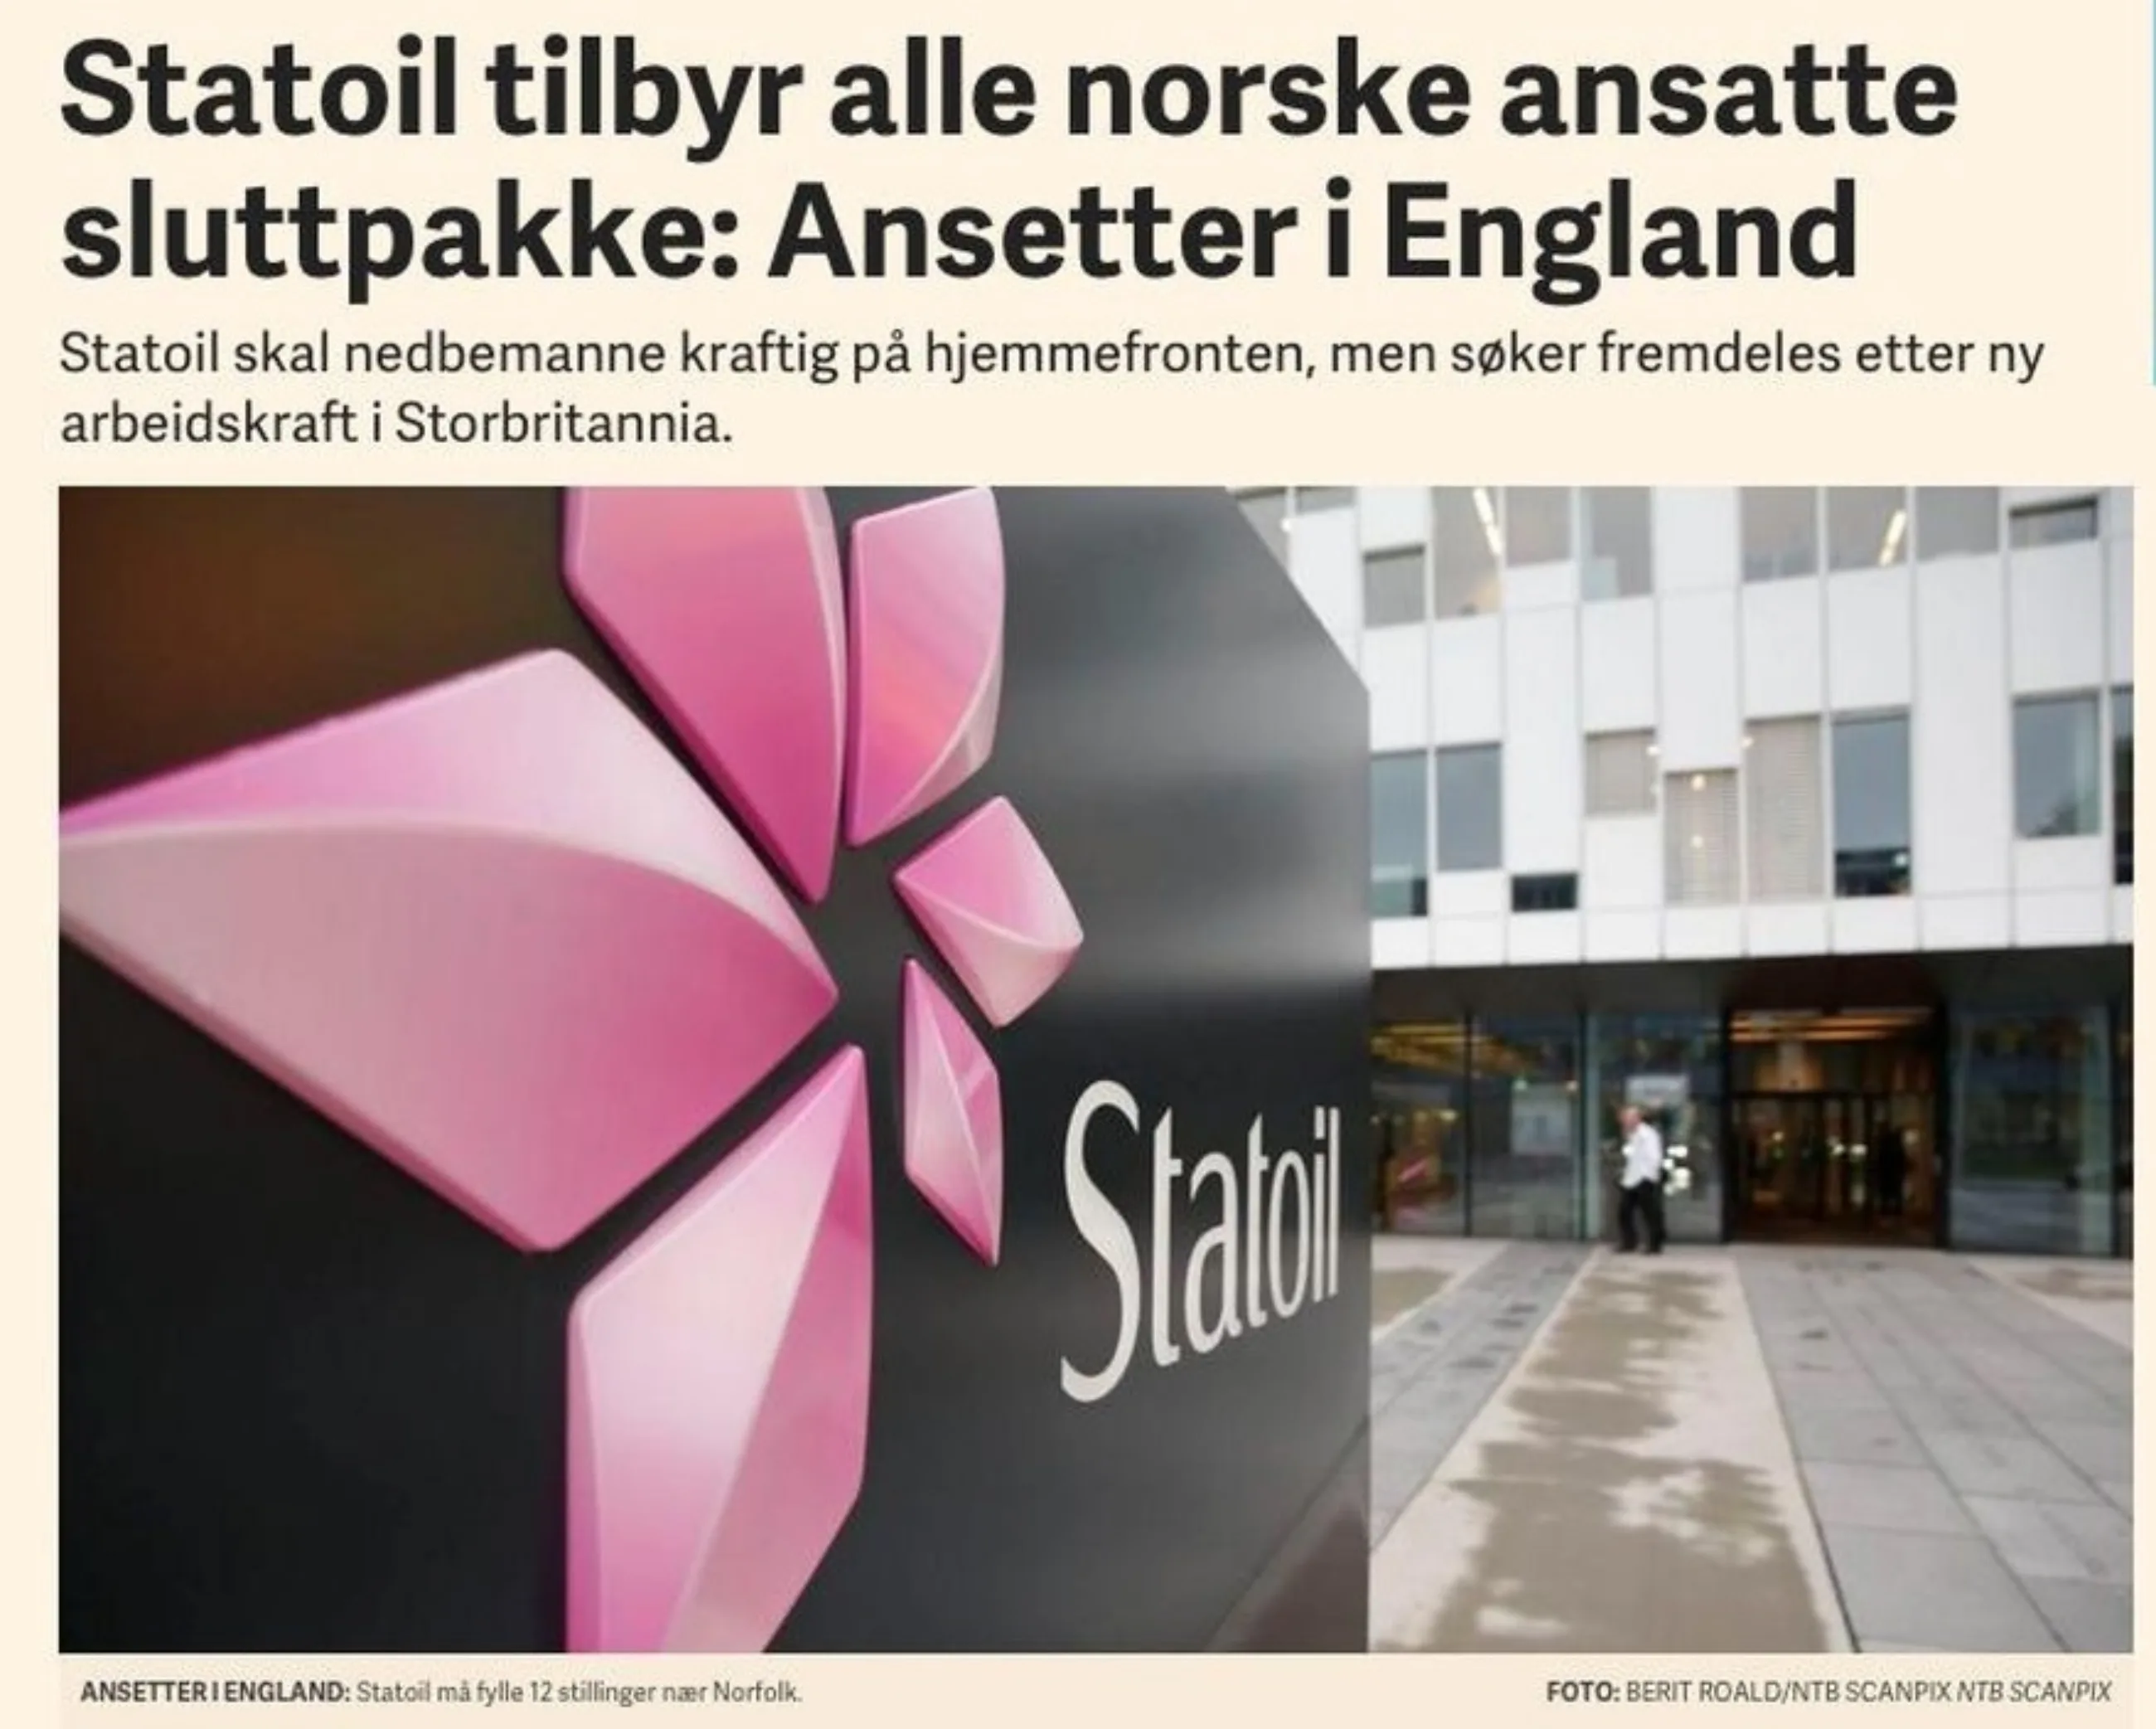 2015 12 15 E24 Statoil tilbyr alle norske ansatte sluttpakke Ansetter i England cropped